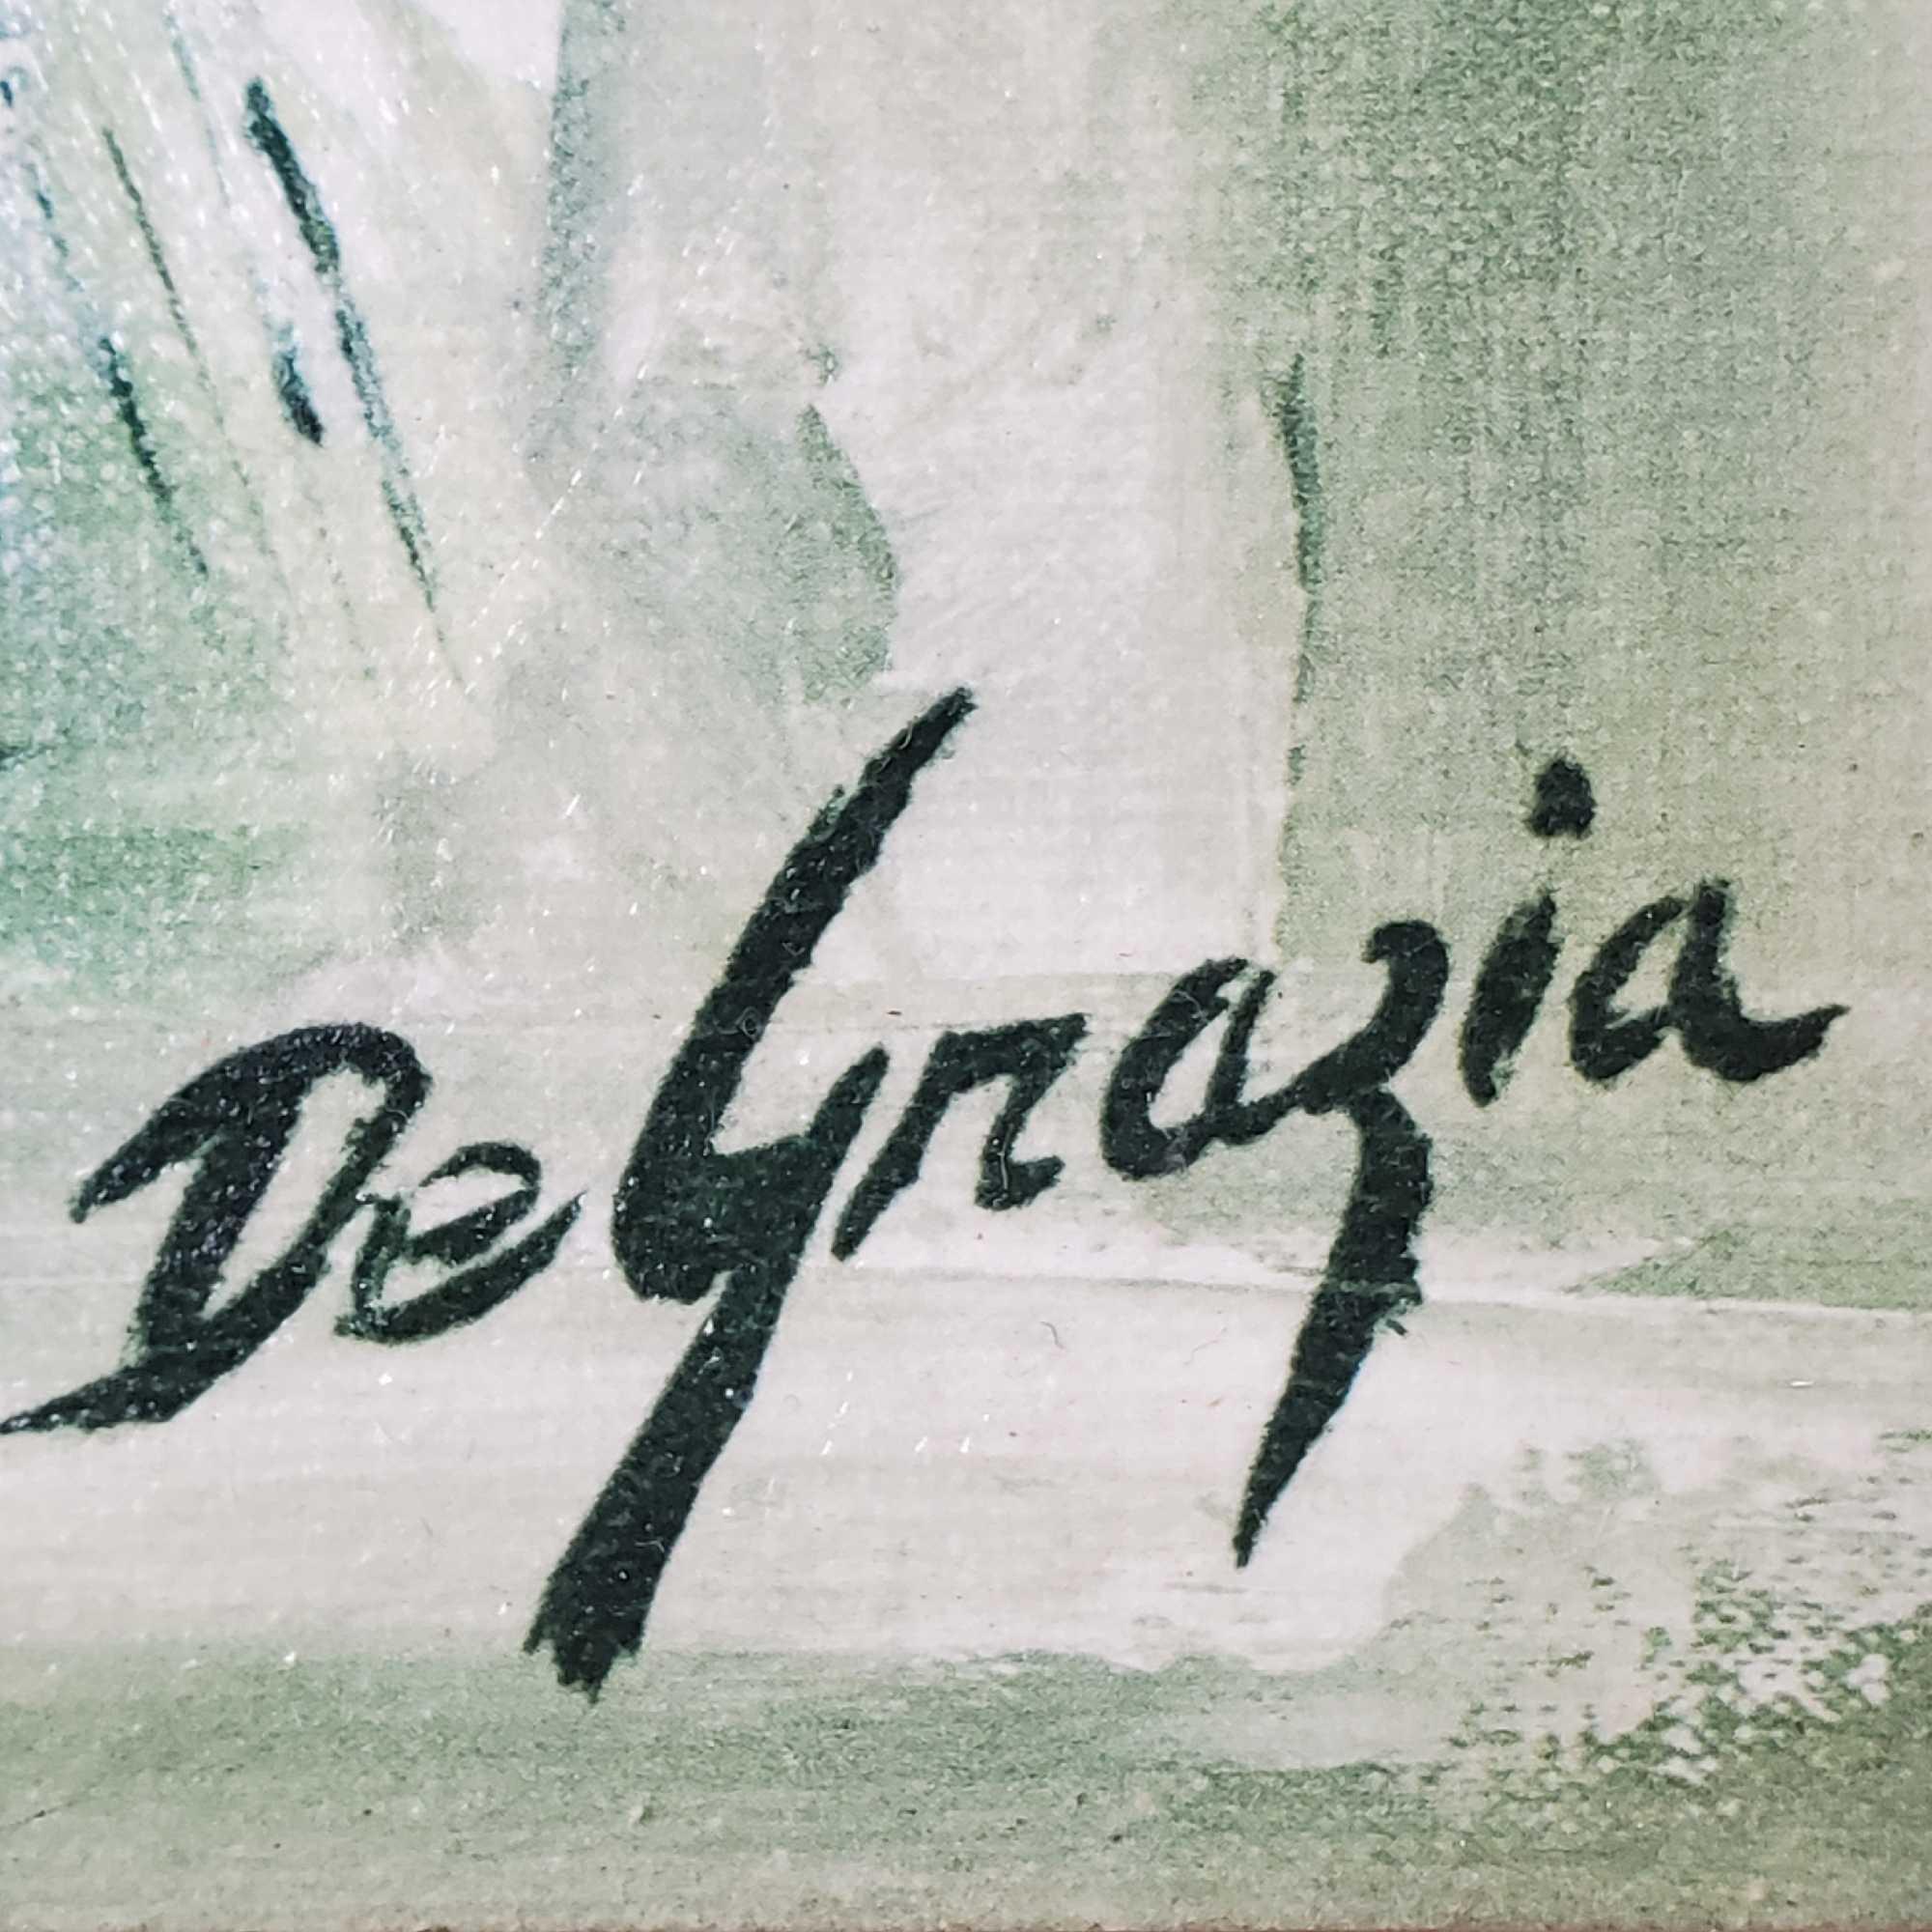 Framed oil/canvas artwork titled Piccolo Pete signed De Grazia